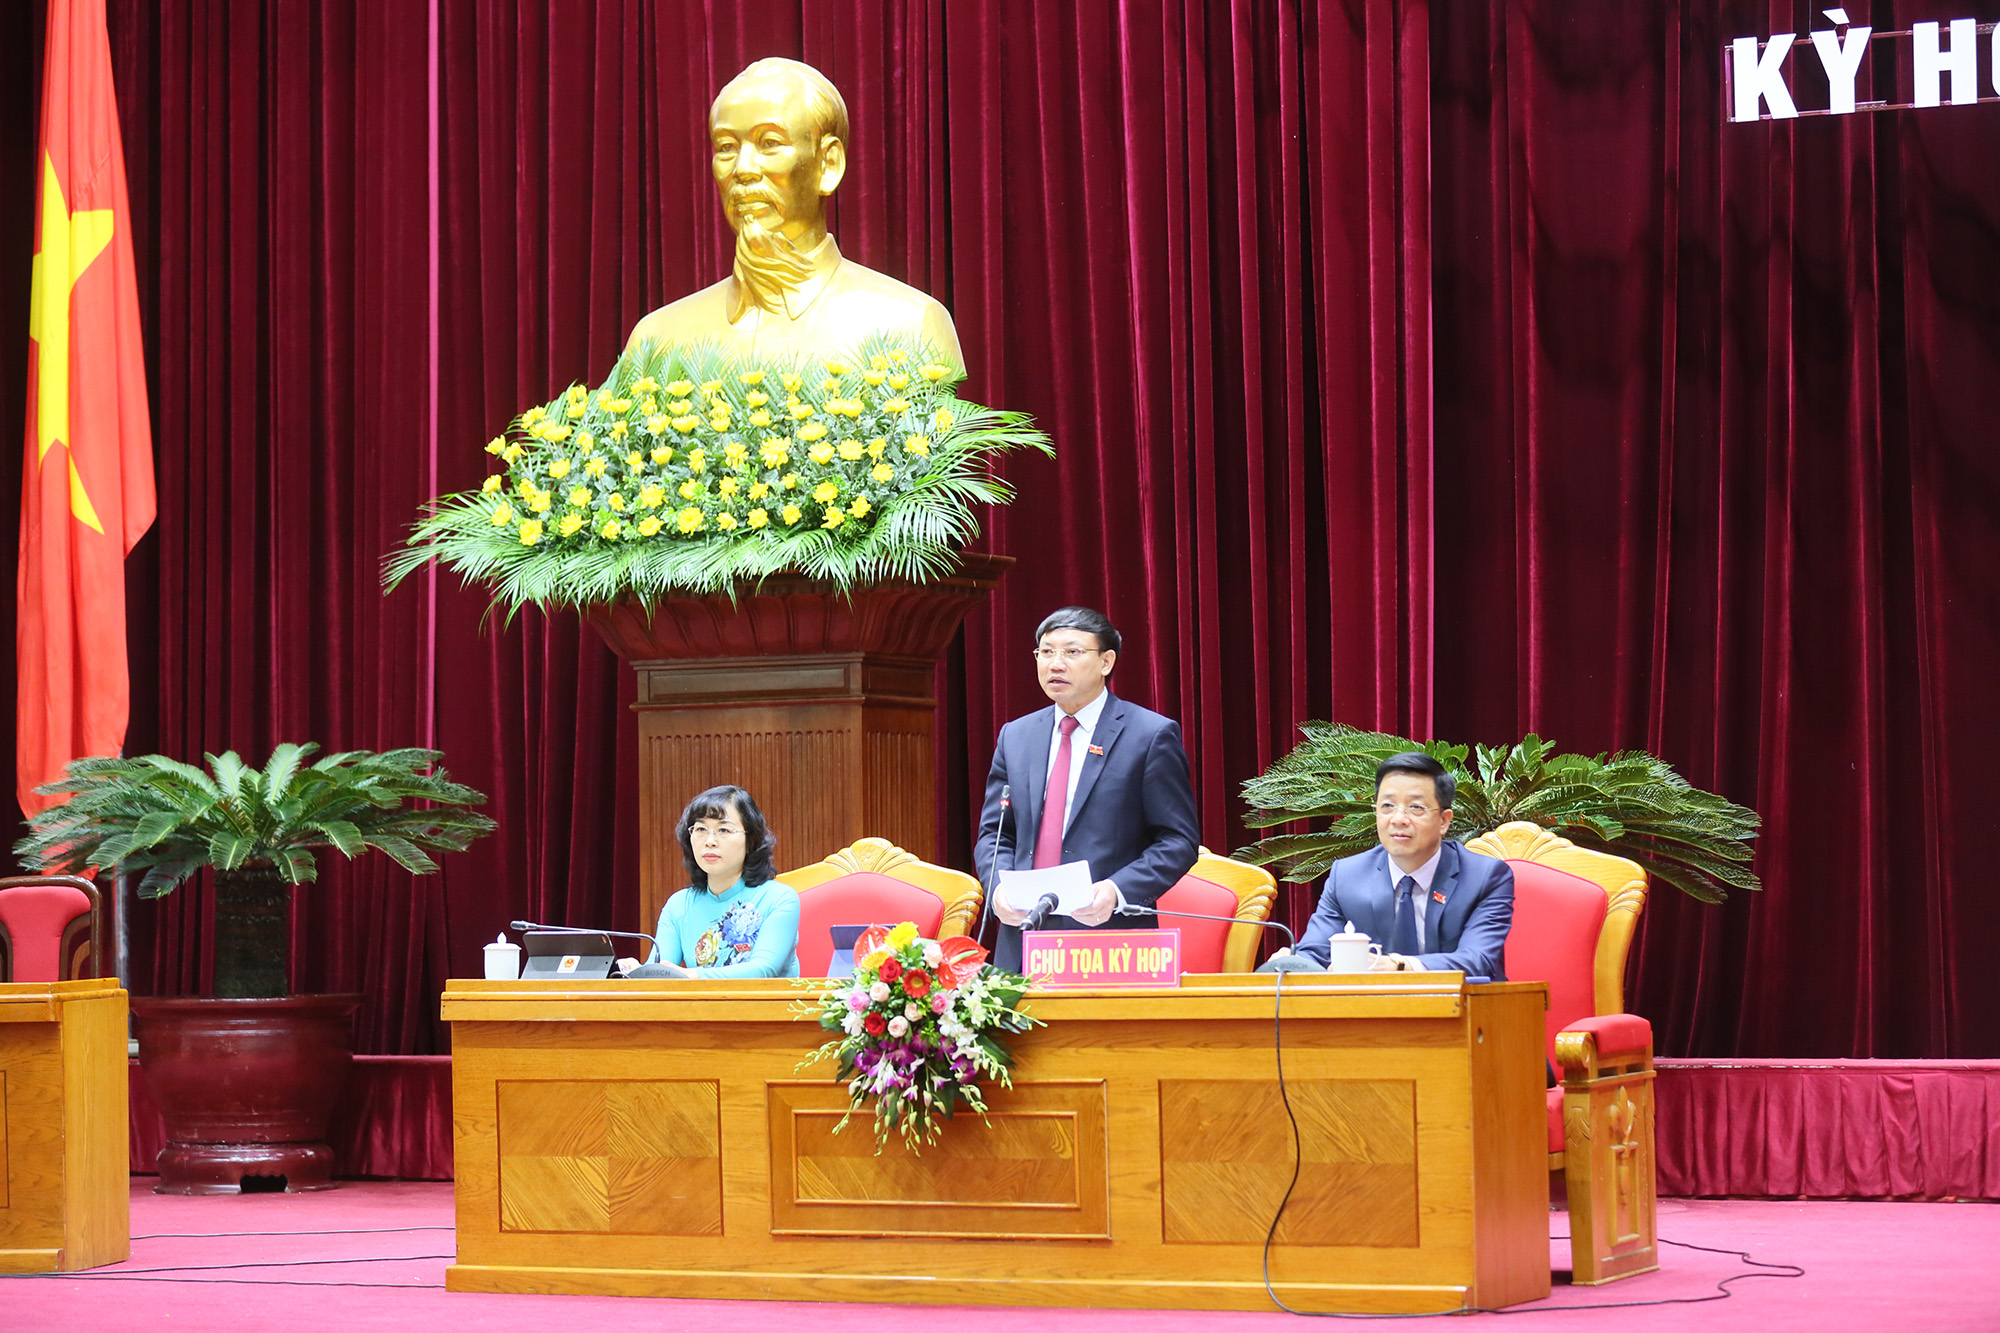 Chất vấn và trả lời chất vấn: Đi thẳng vấn đề cử tri quan tâm, vì sự phát triển bền vững của Quảng Ninh